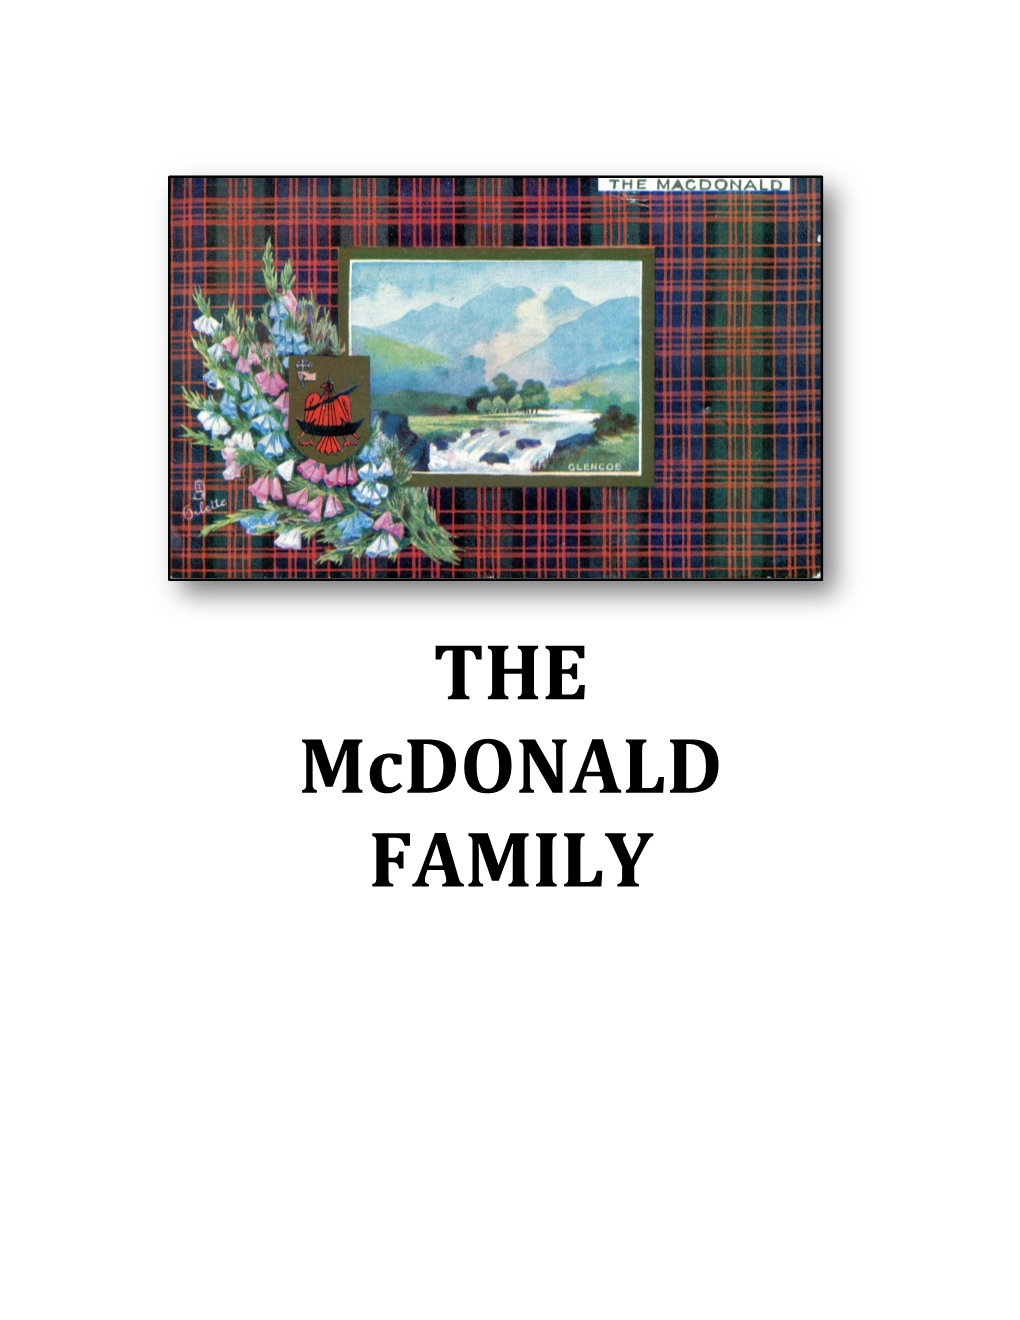 THE Mcdonald FAMILY